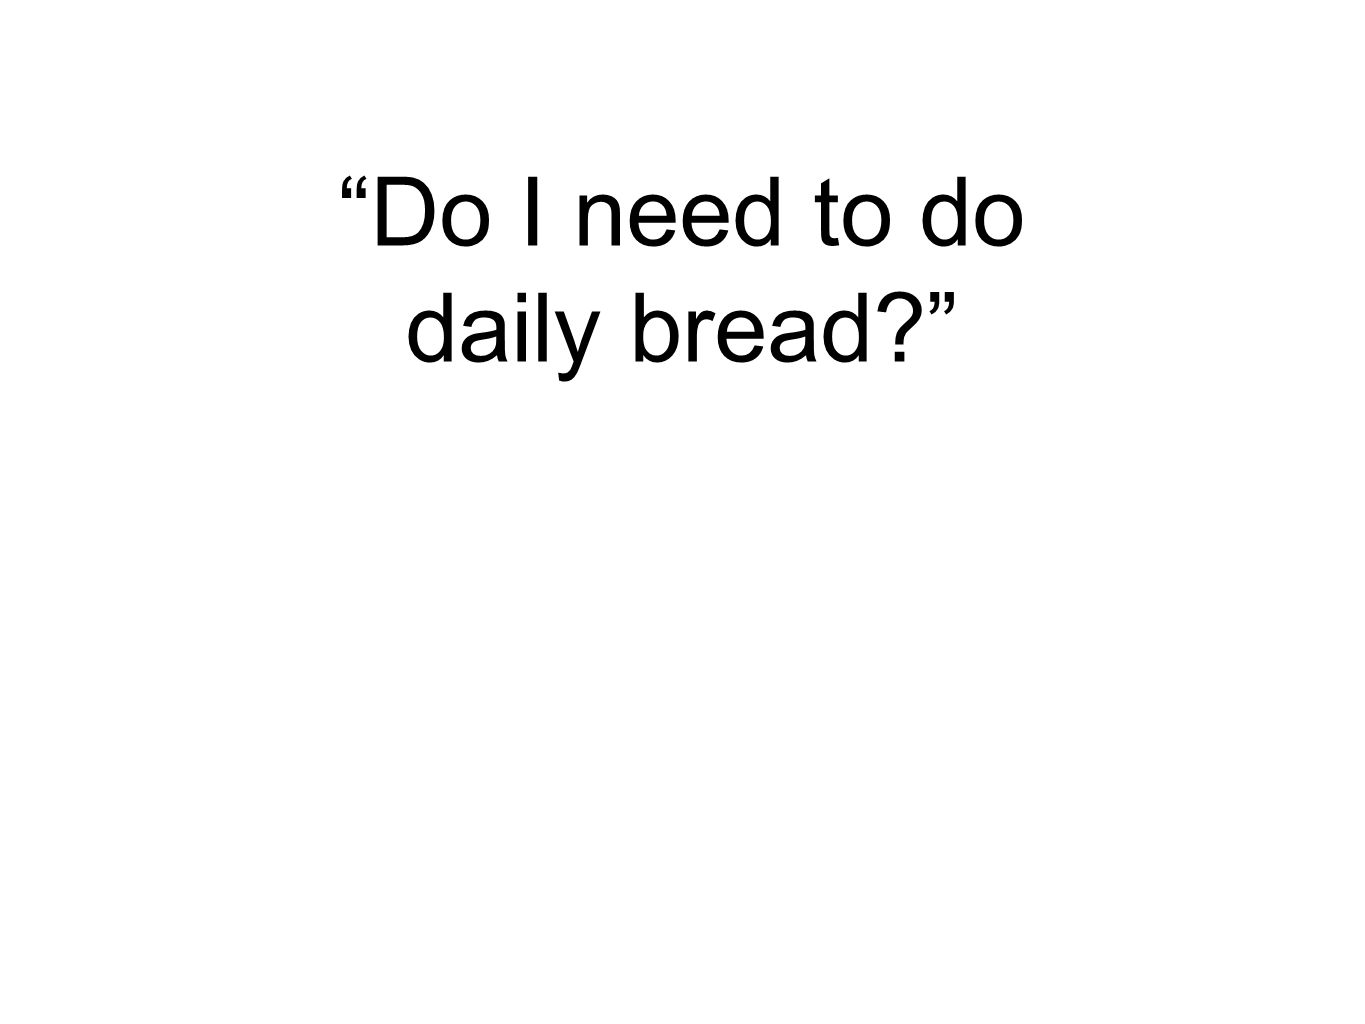 Do I need to do daily bread